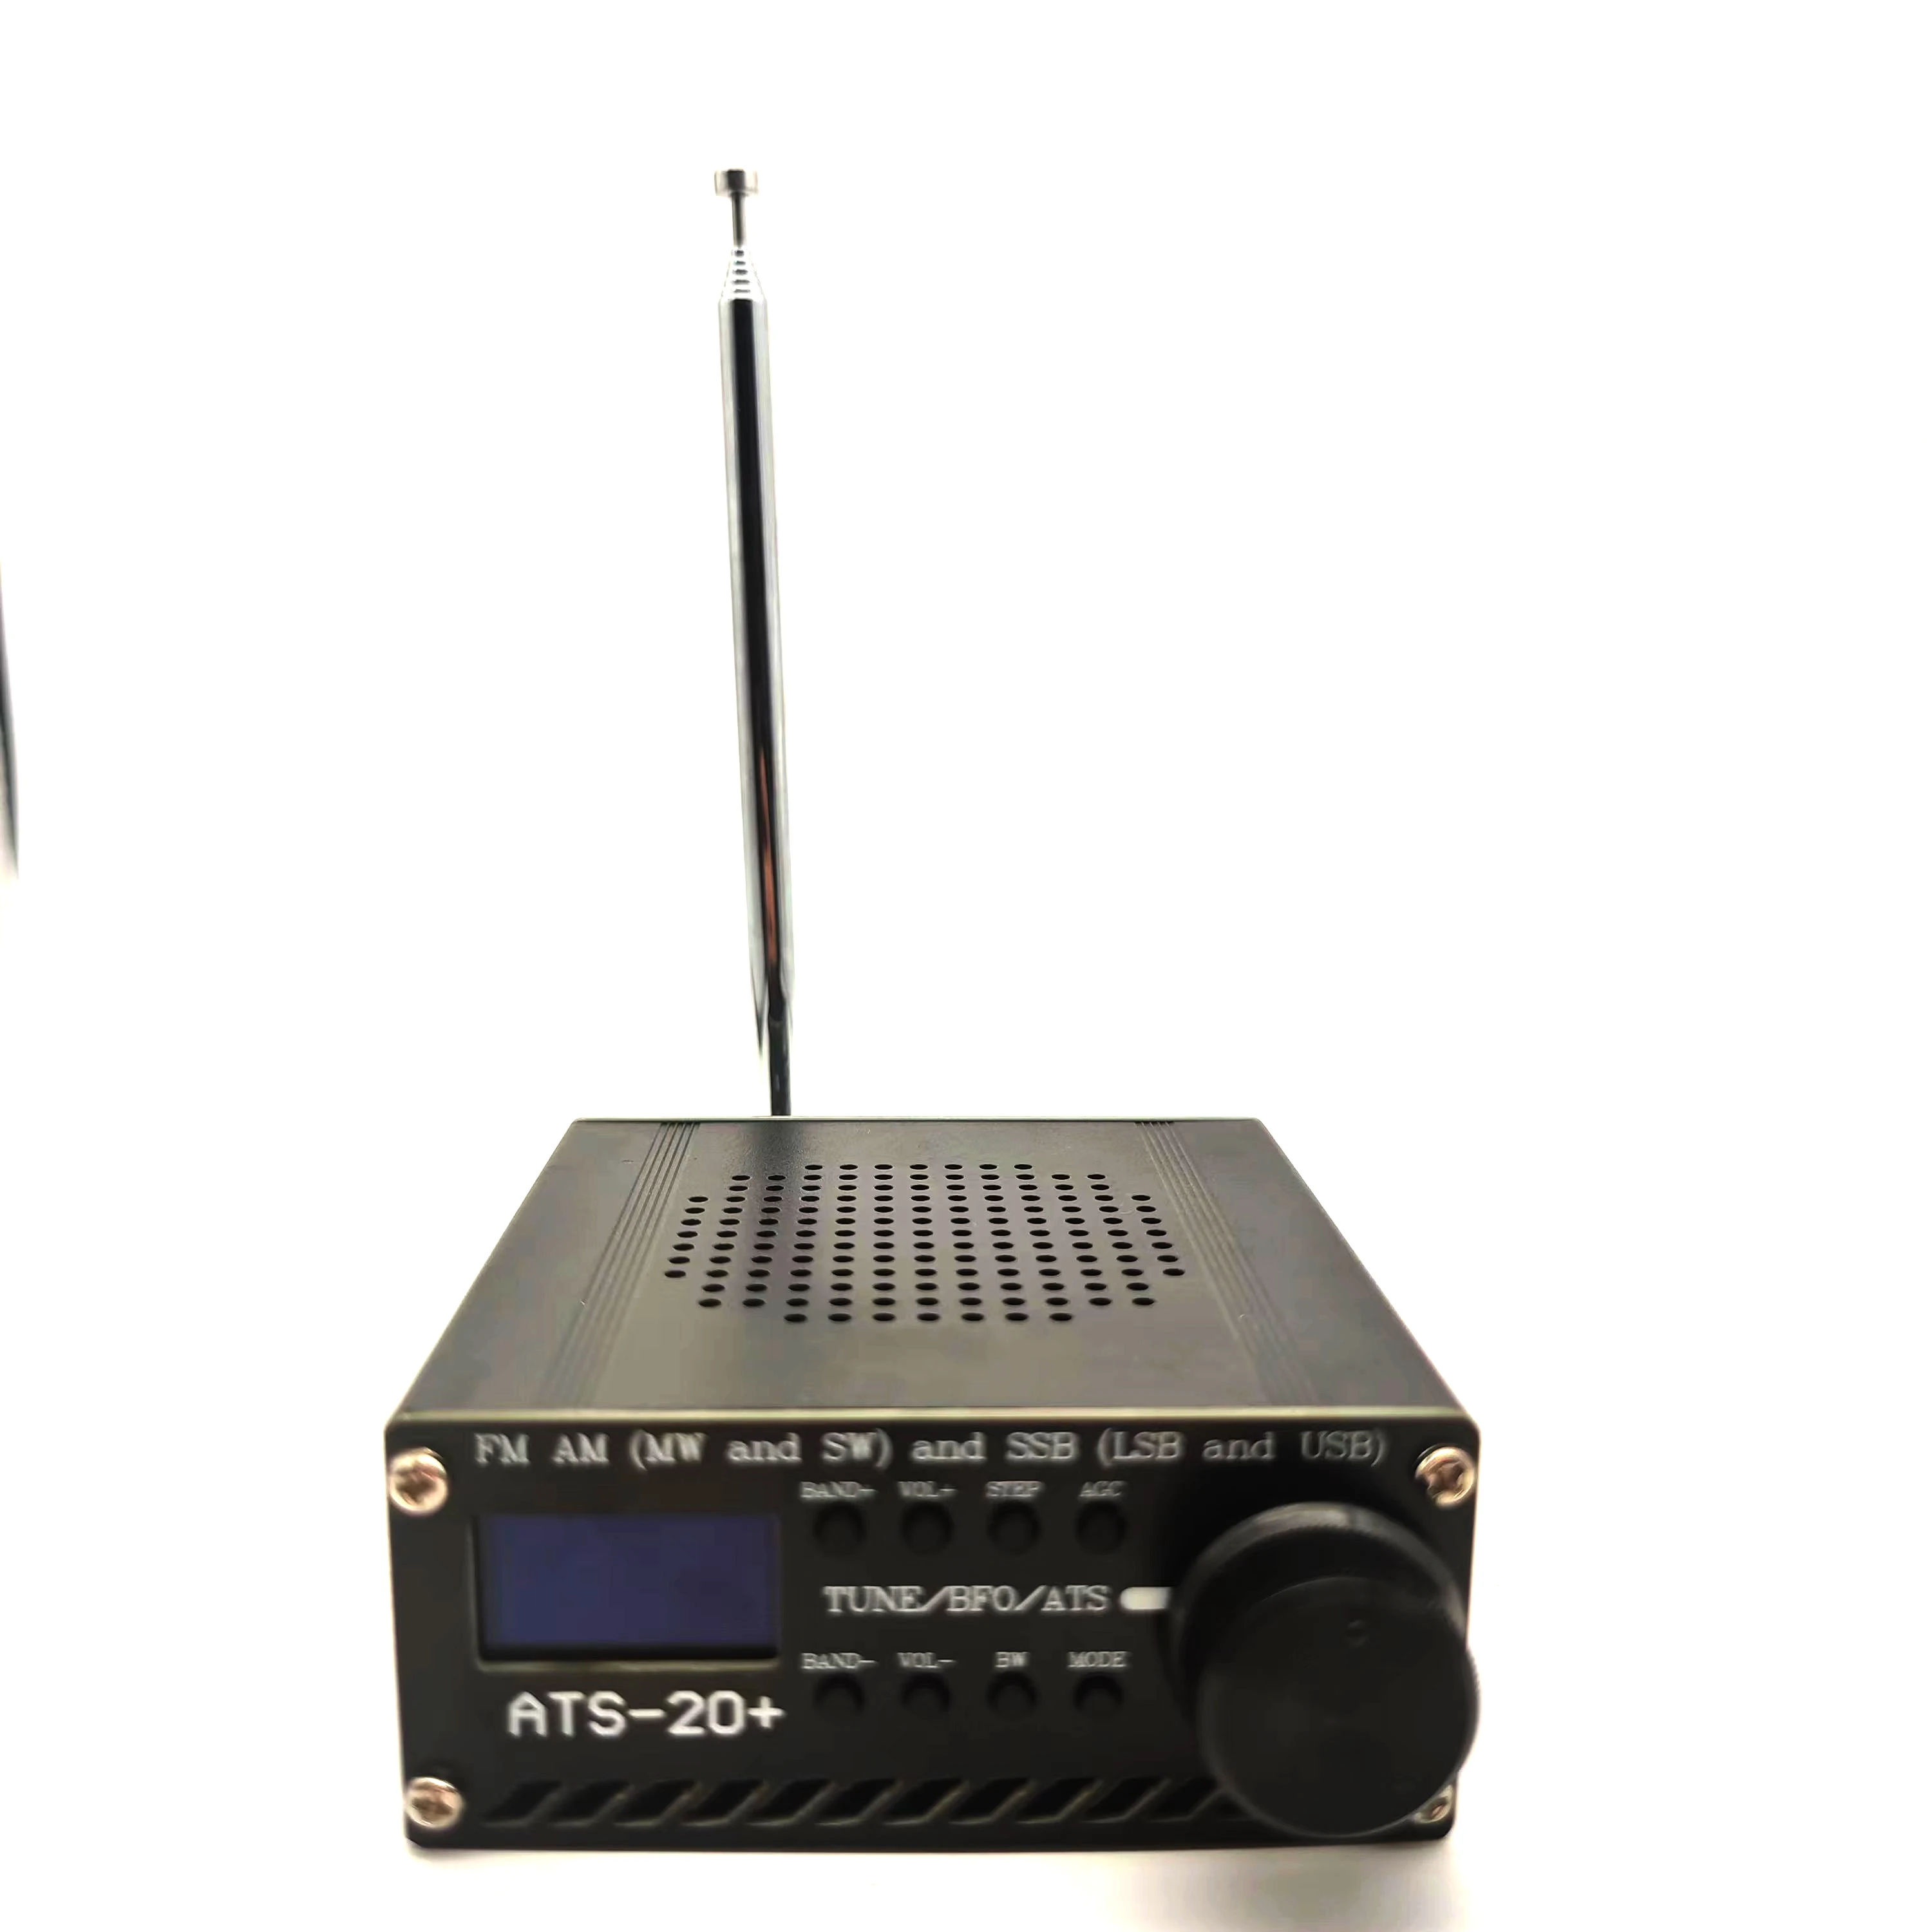 

SI4732 ats20/20 + Plus V2 все диапазоны радиоприемника FM AM (MW & SW) SSB (LSB и USB) с литиевой батареей + антенной + динамиком + чехол